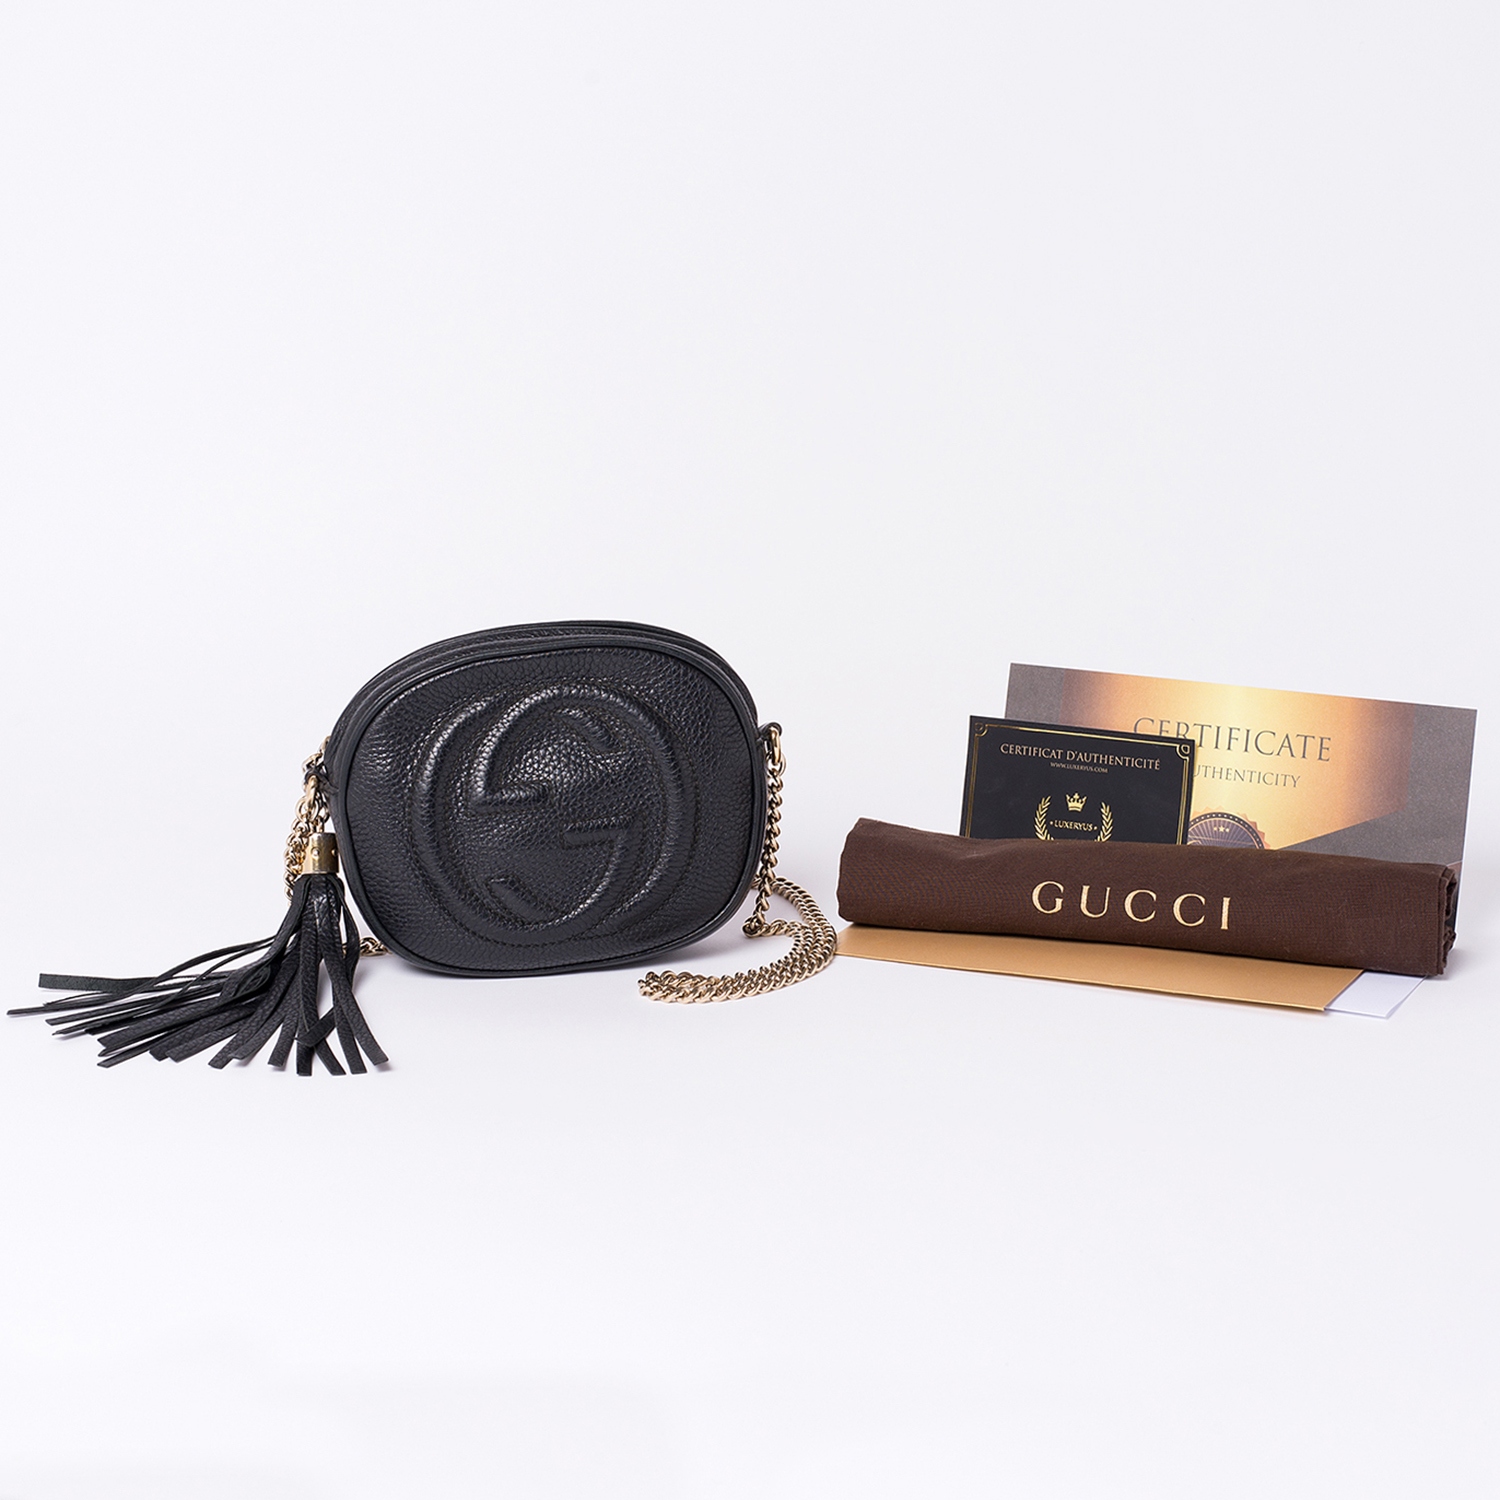 Mini Sac Gucci Soho Authentique d'occasion en cuir poudre couleur noir avec chaîne en métal doré